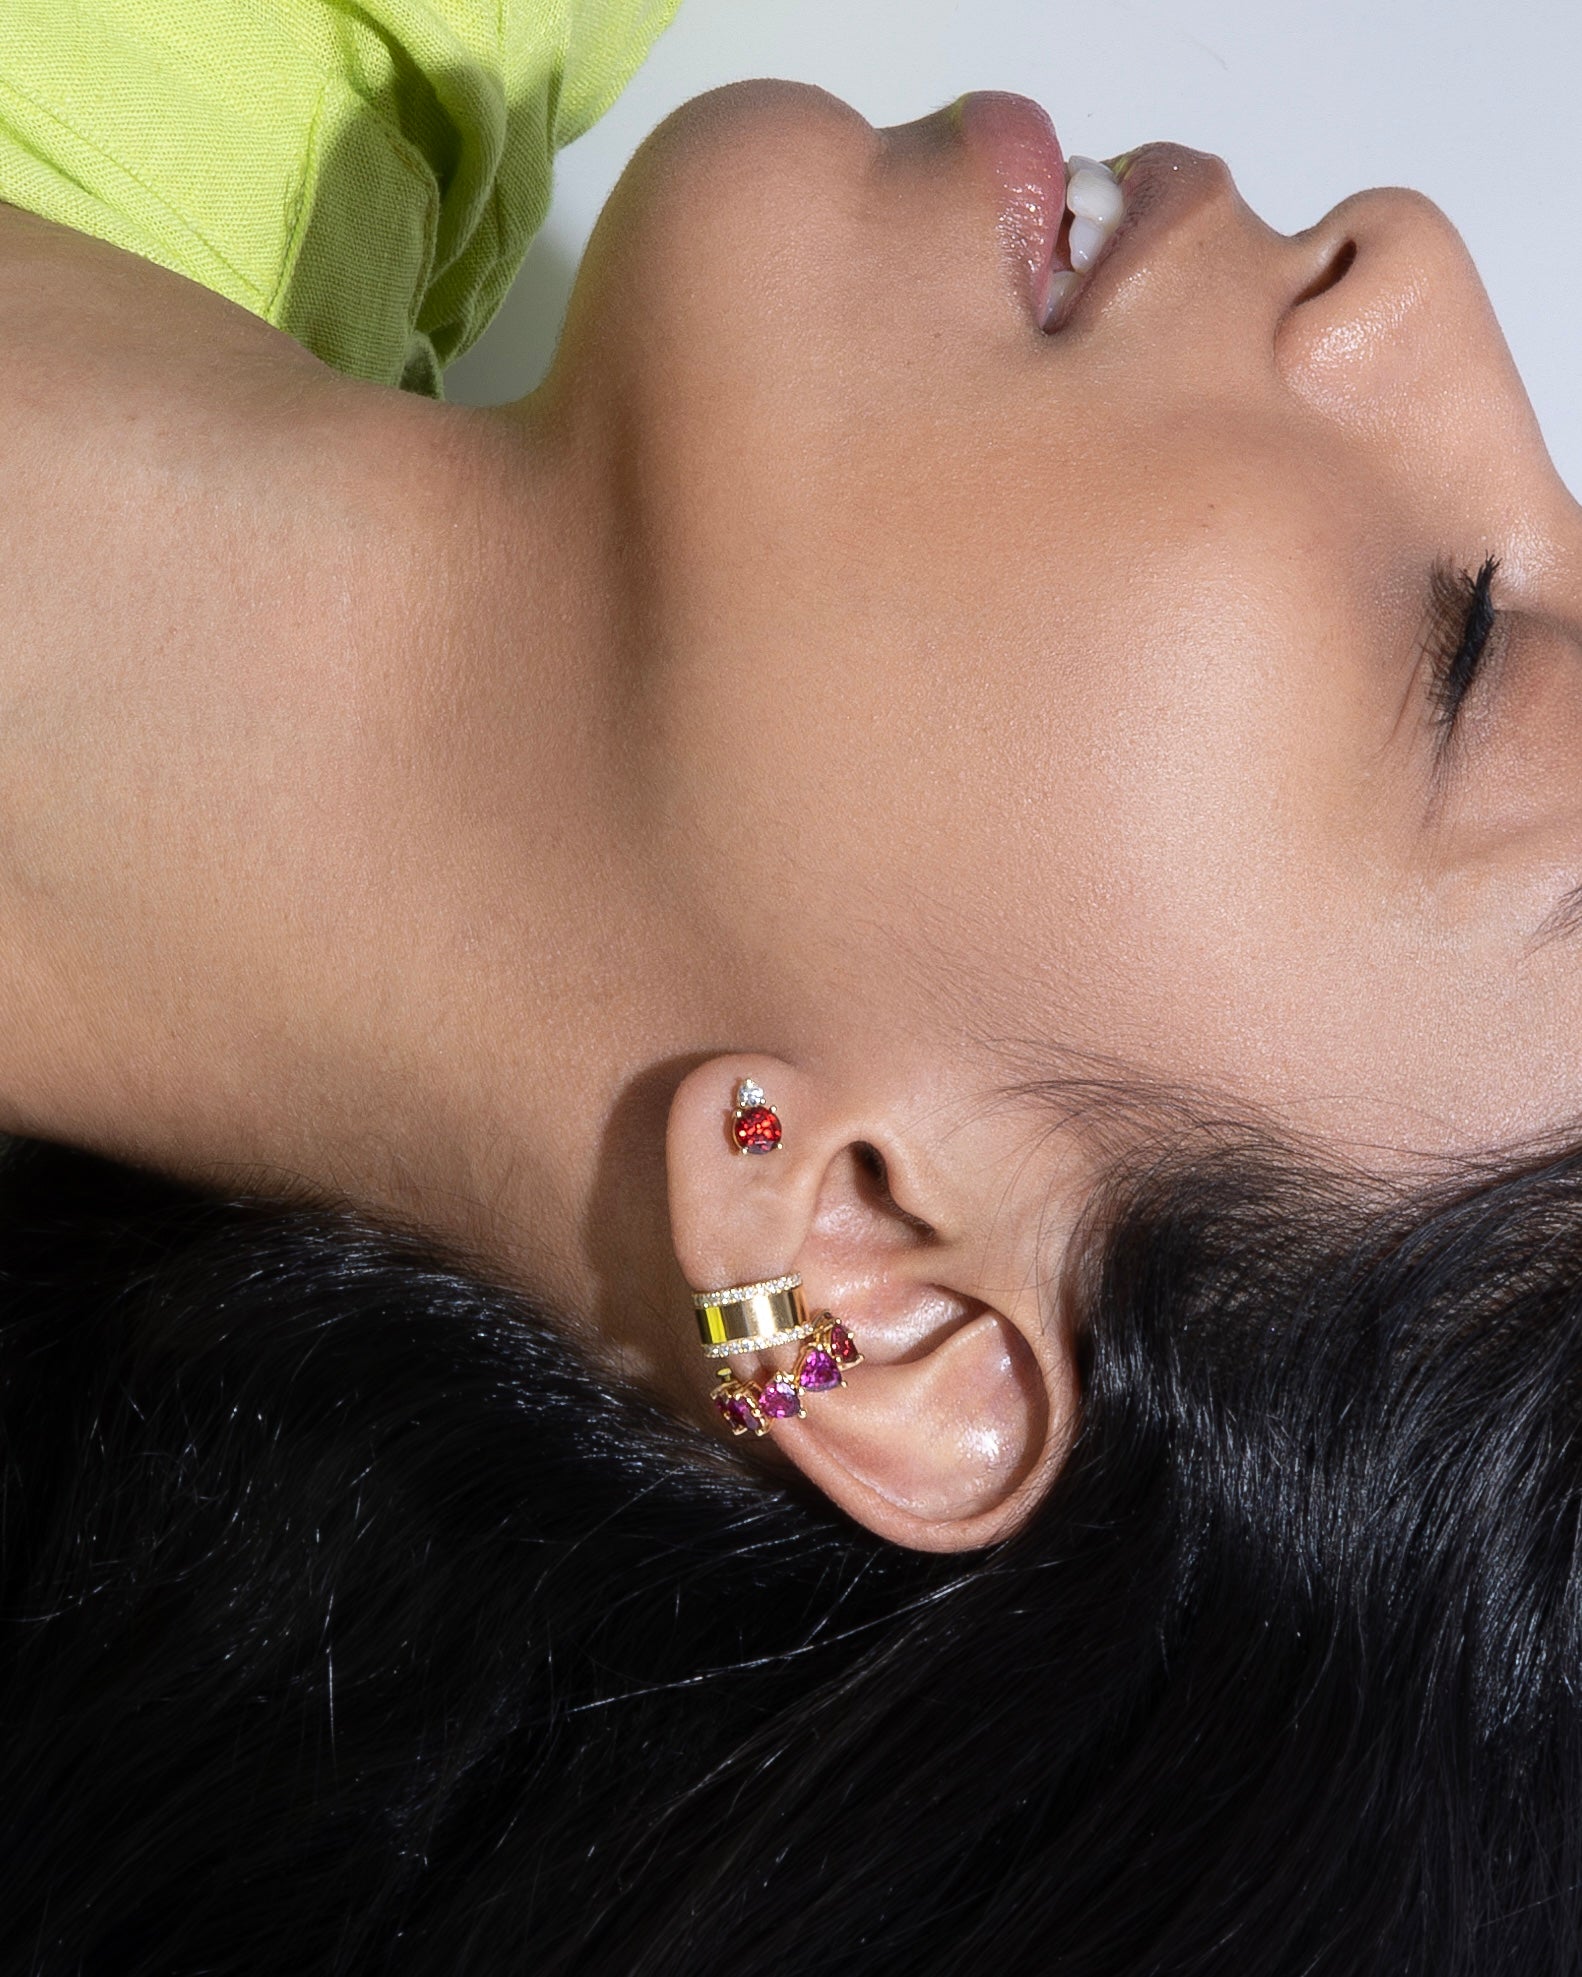 Juliette Kor Jewelry Serpenta ear cuff with rhodolite garnets